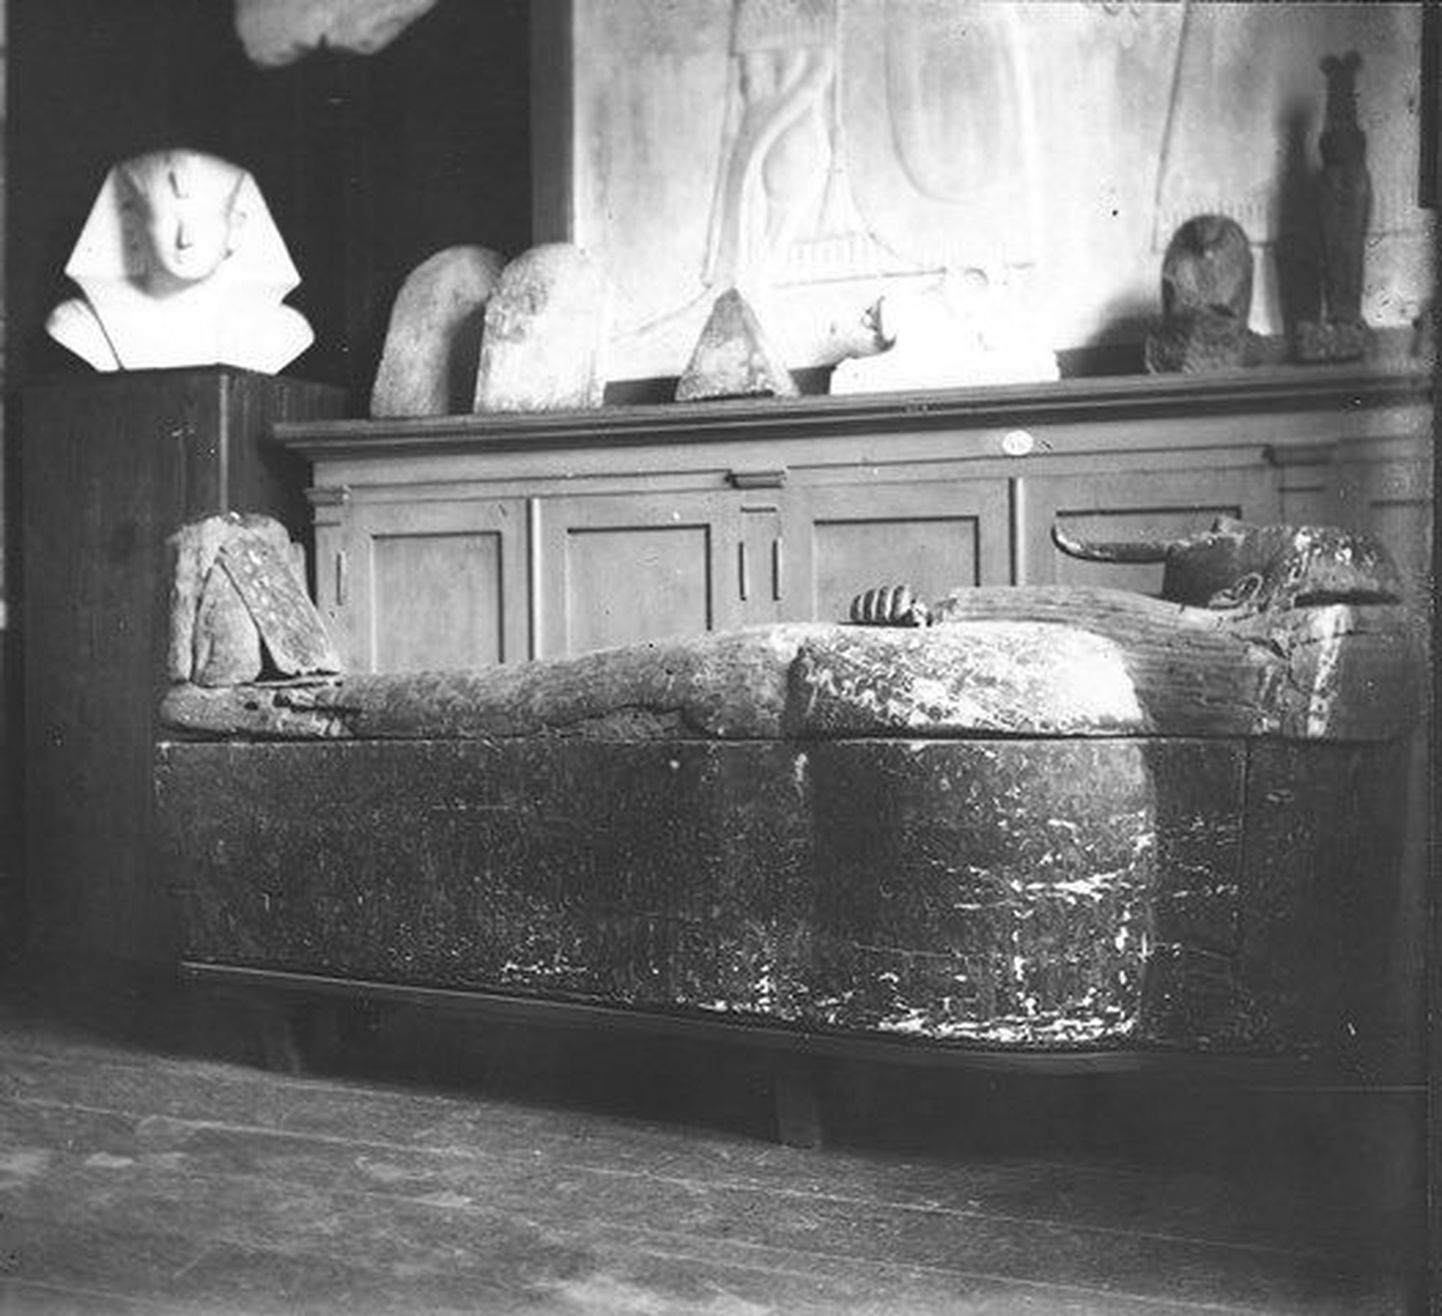 Selline nägi kollektsiooni uhkus, Nesipaherentahati sarkofaag välja 1915. aastal, veel Tartus vahetult enne äraviimist Venemaale.